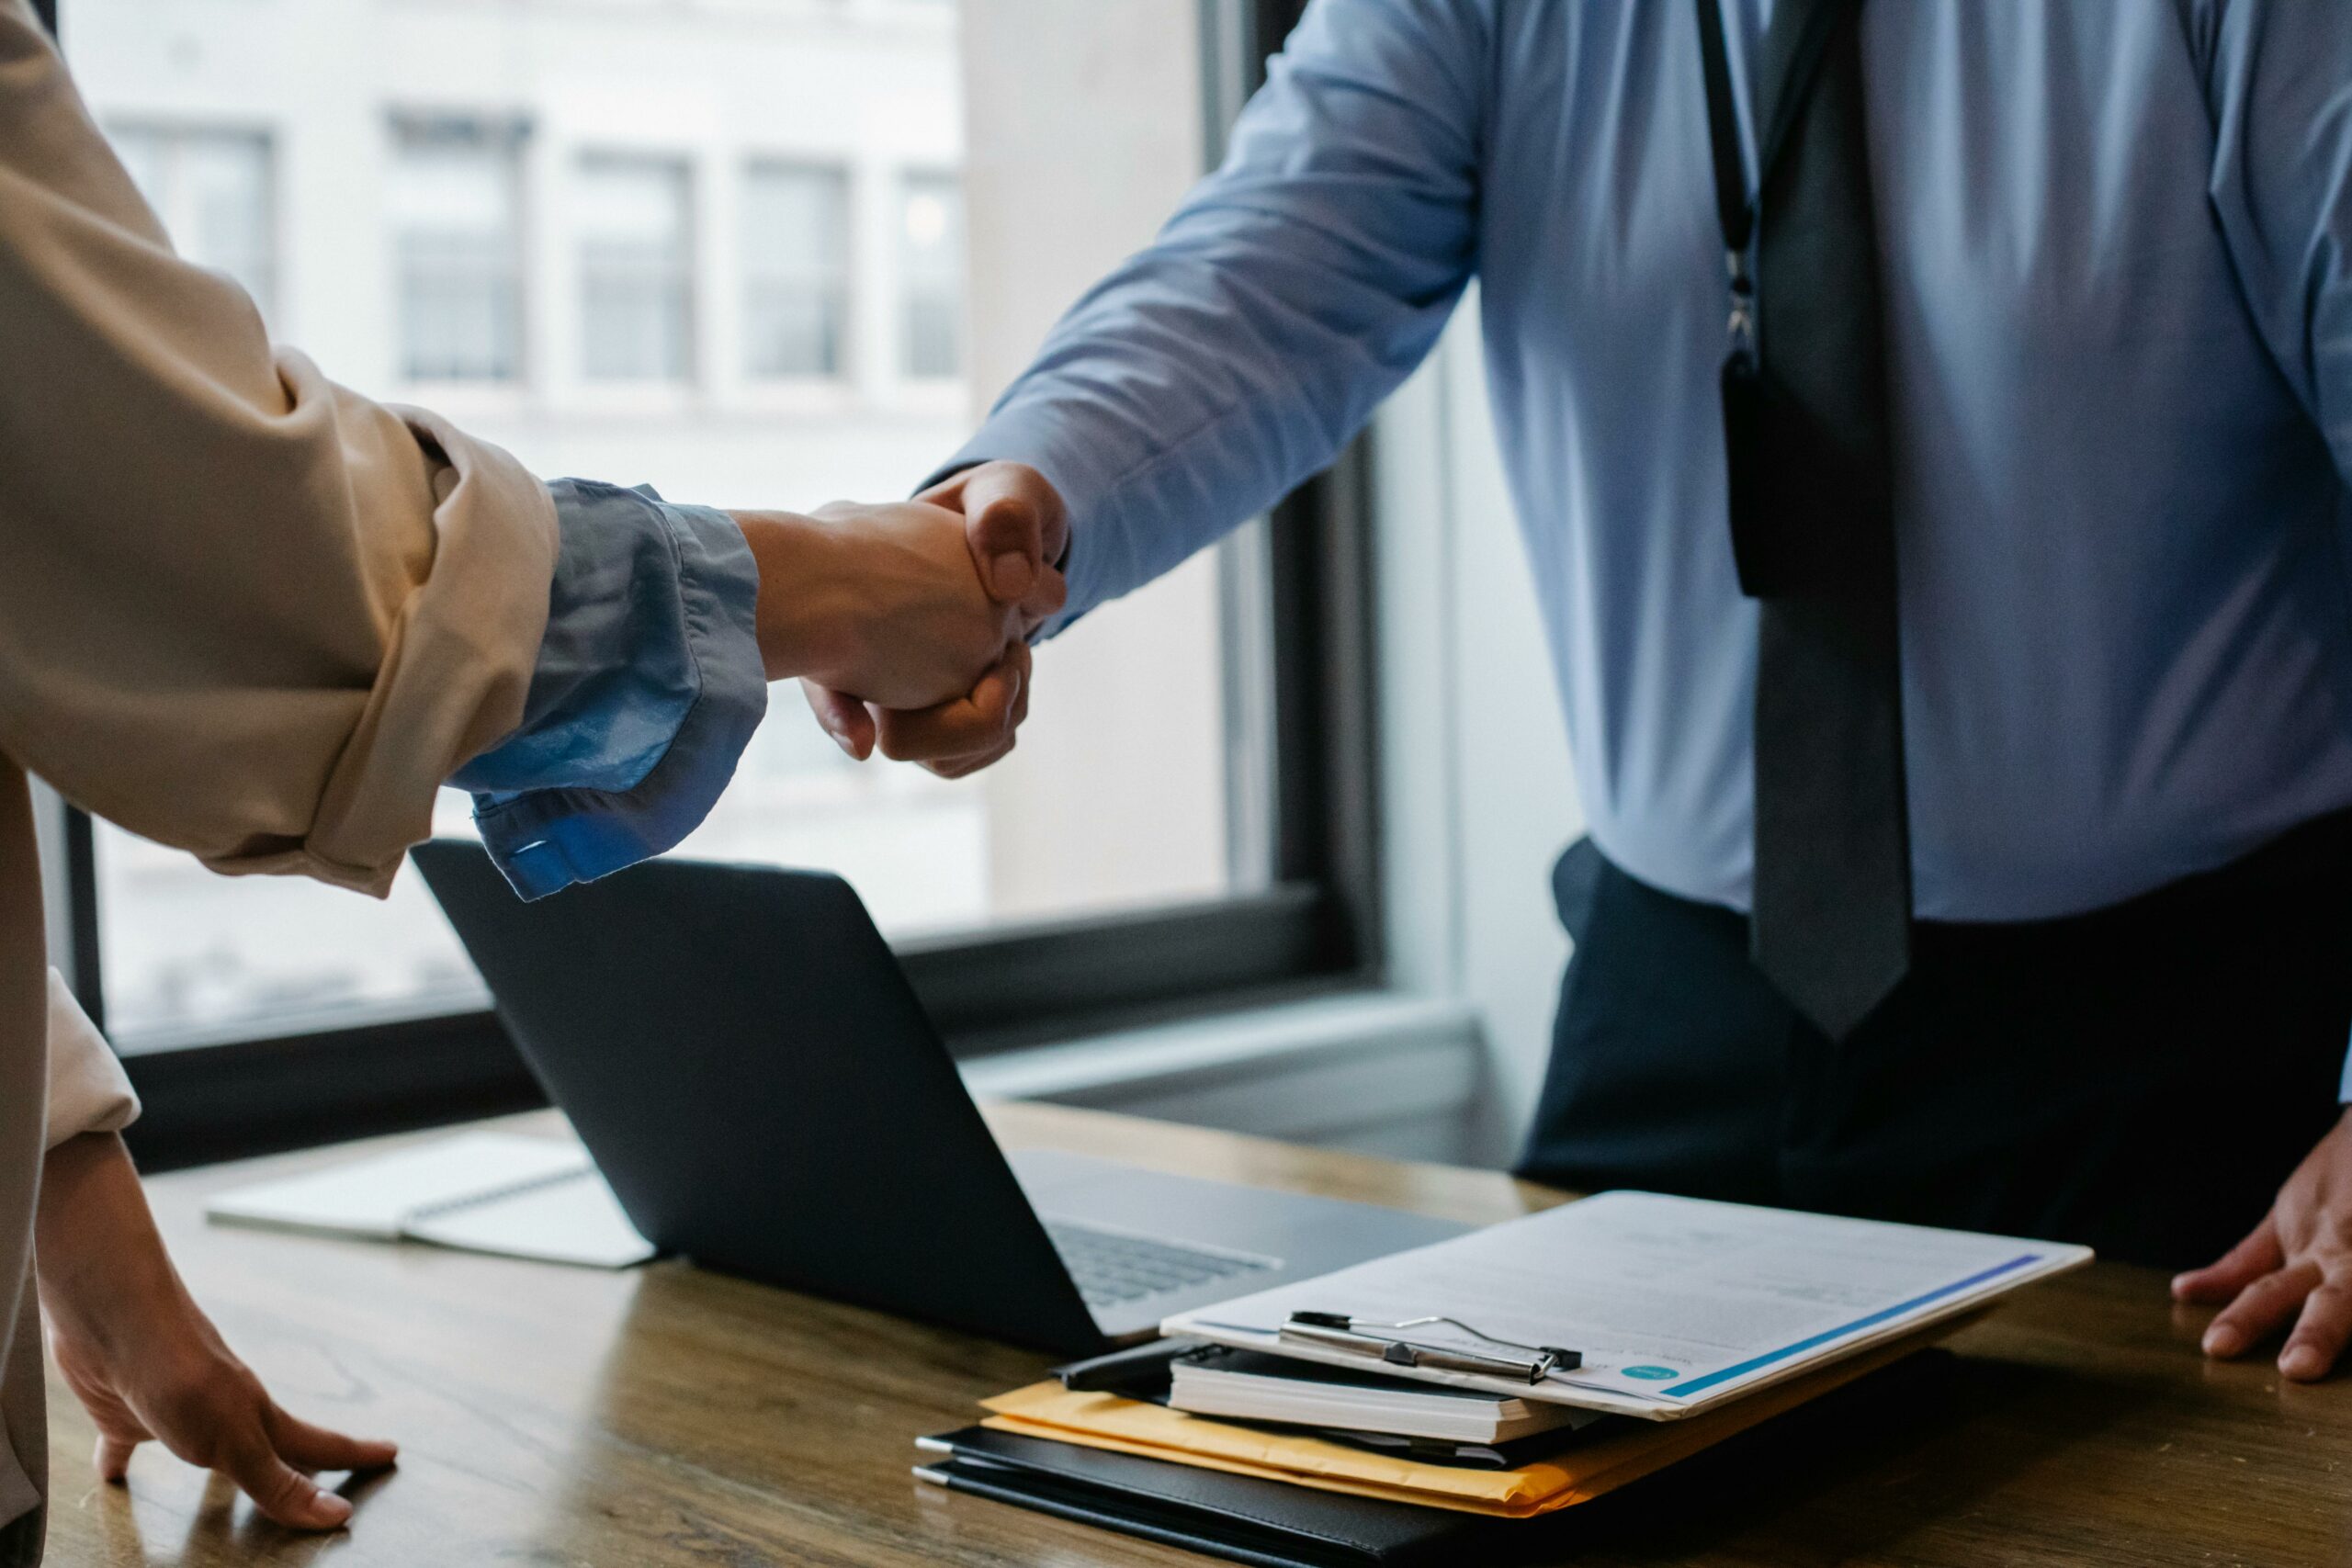 Poignée de main entre deux professionnels au-dessus d'une table de travail, symbole d'un accord ou d'une transaction réussie.